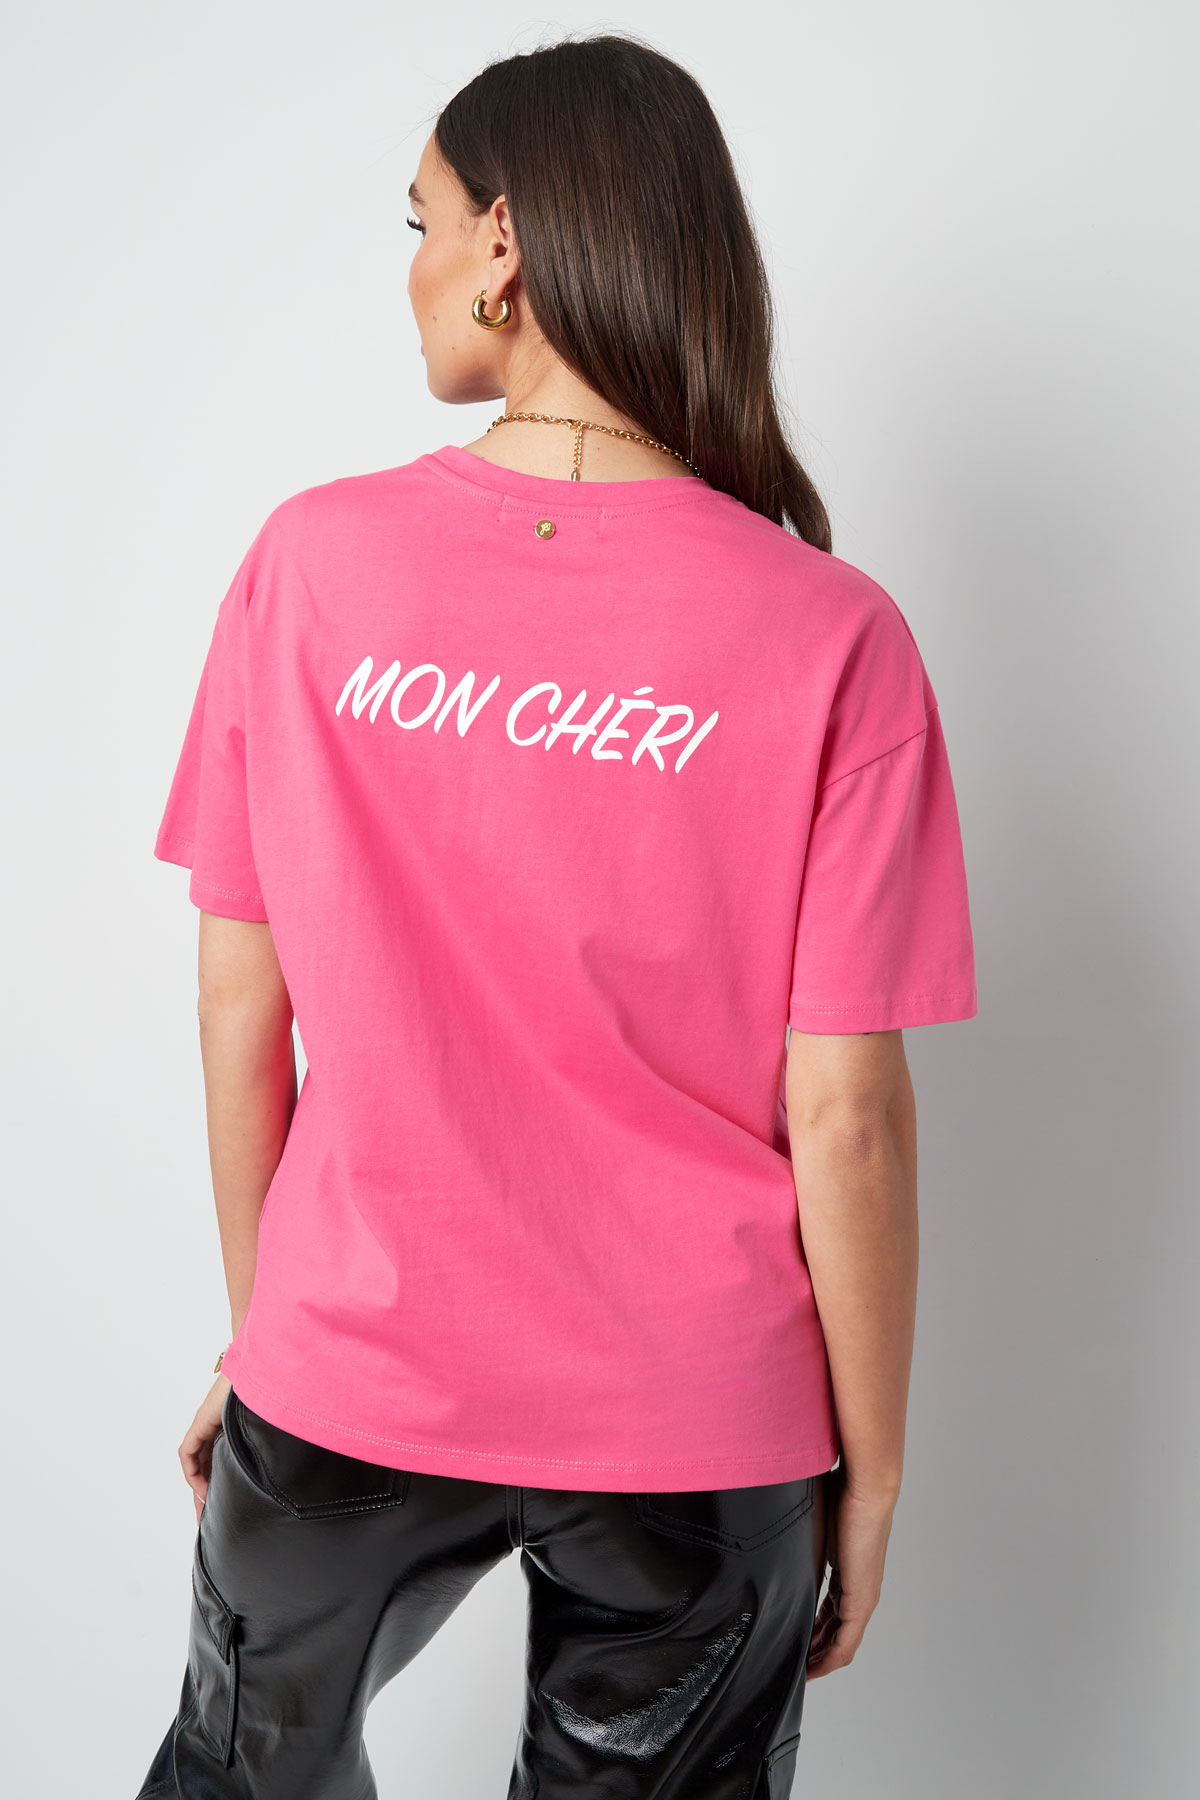 T-shirt mon cheri - fuchsia h5 Picture9